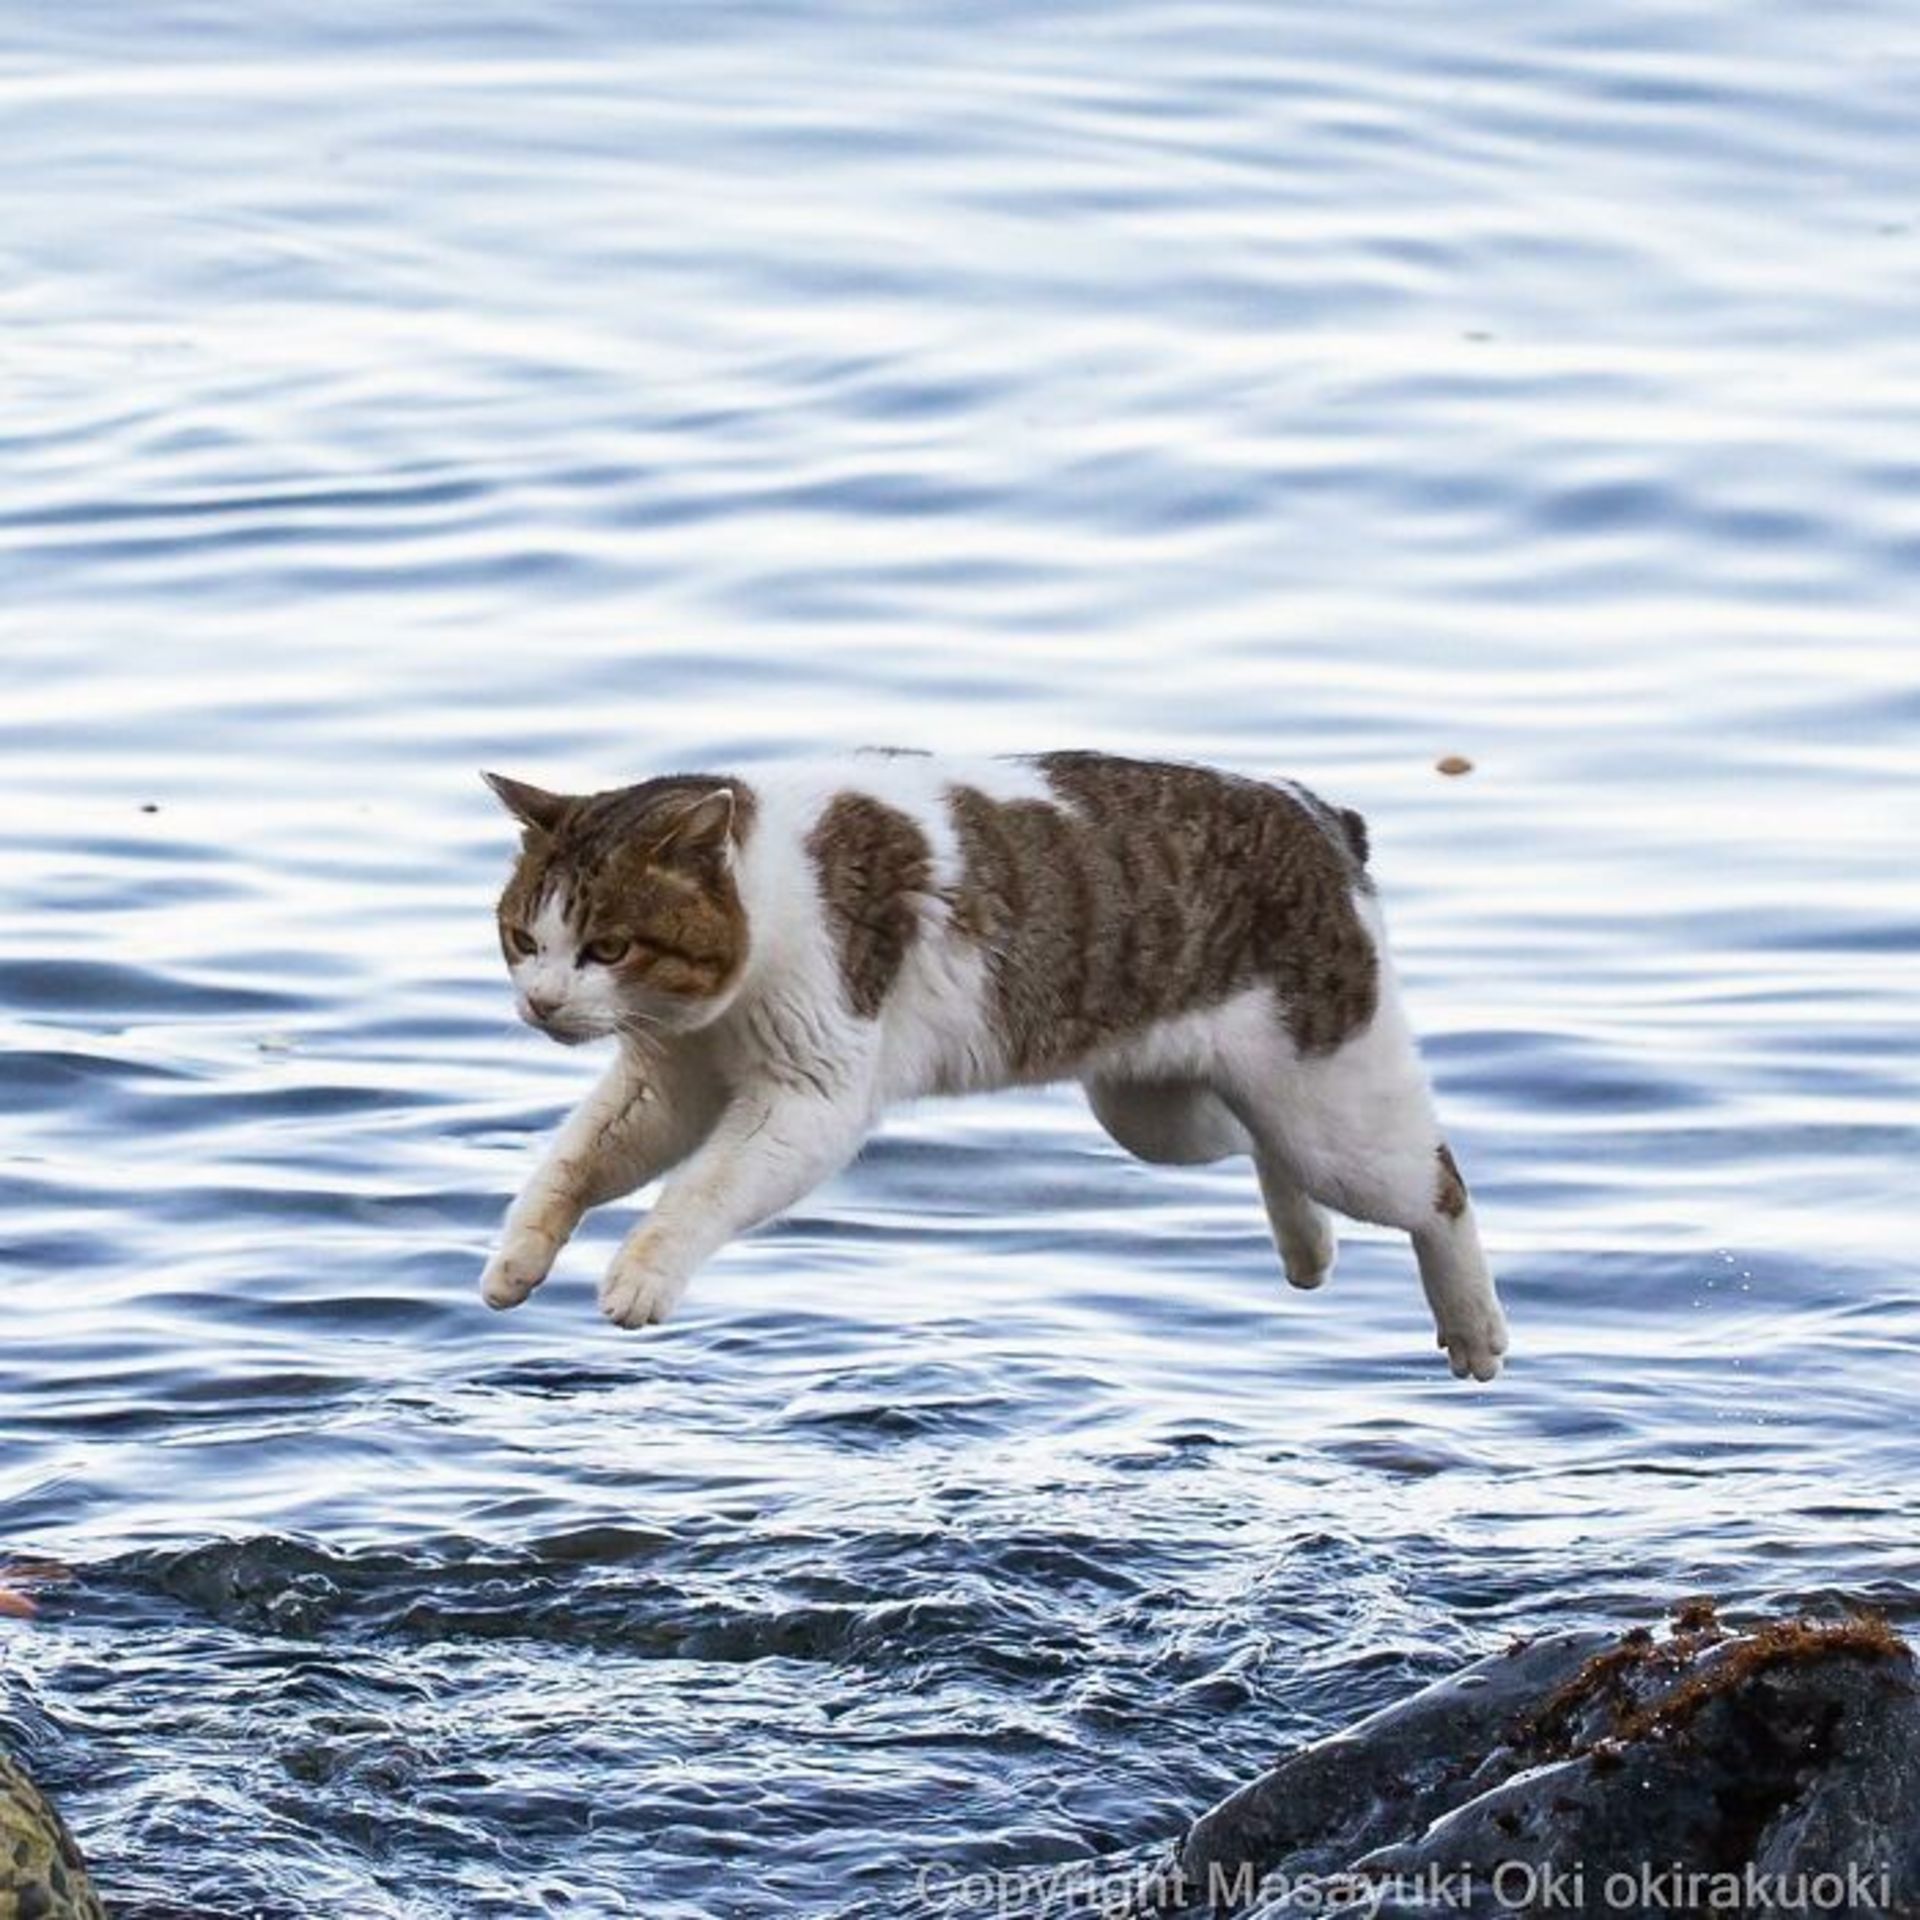 گربه در حال پریدن از روی آب